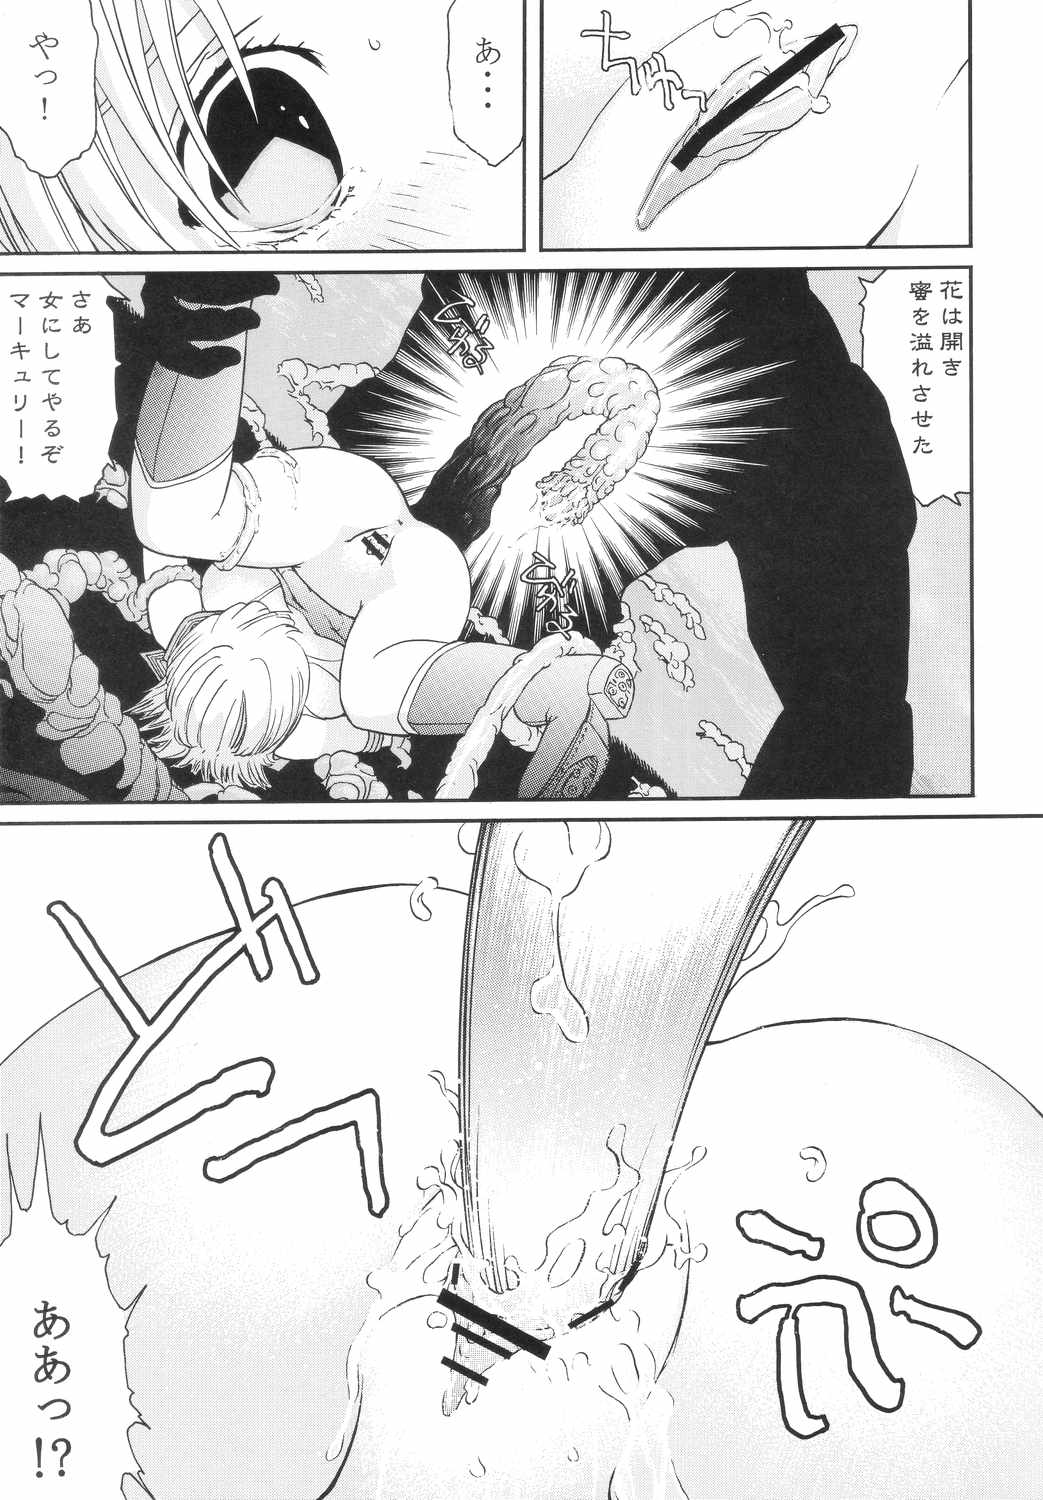 (Doujinshi) [CIRCLE AV] Bishoujo Senshi Gensou Vol 4 